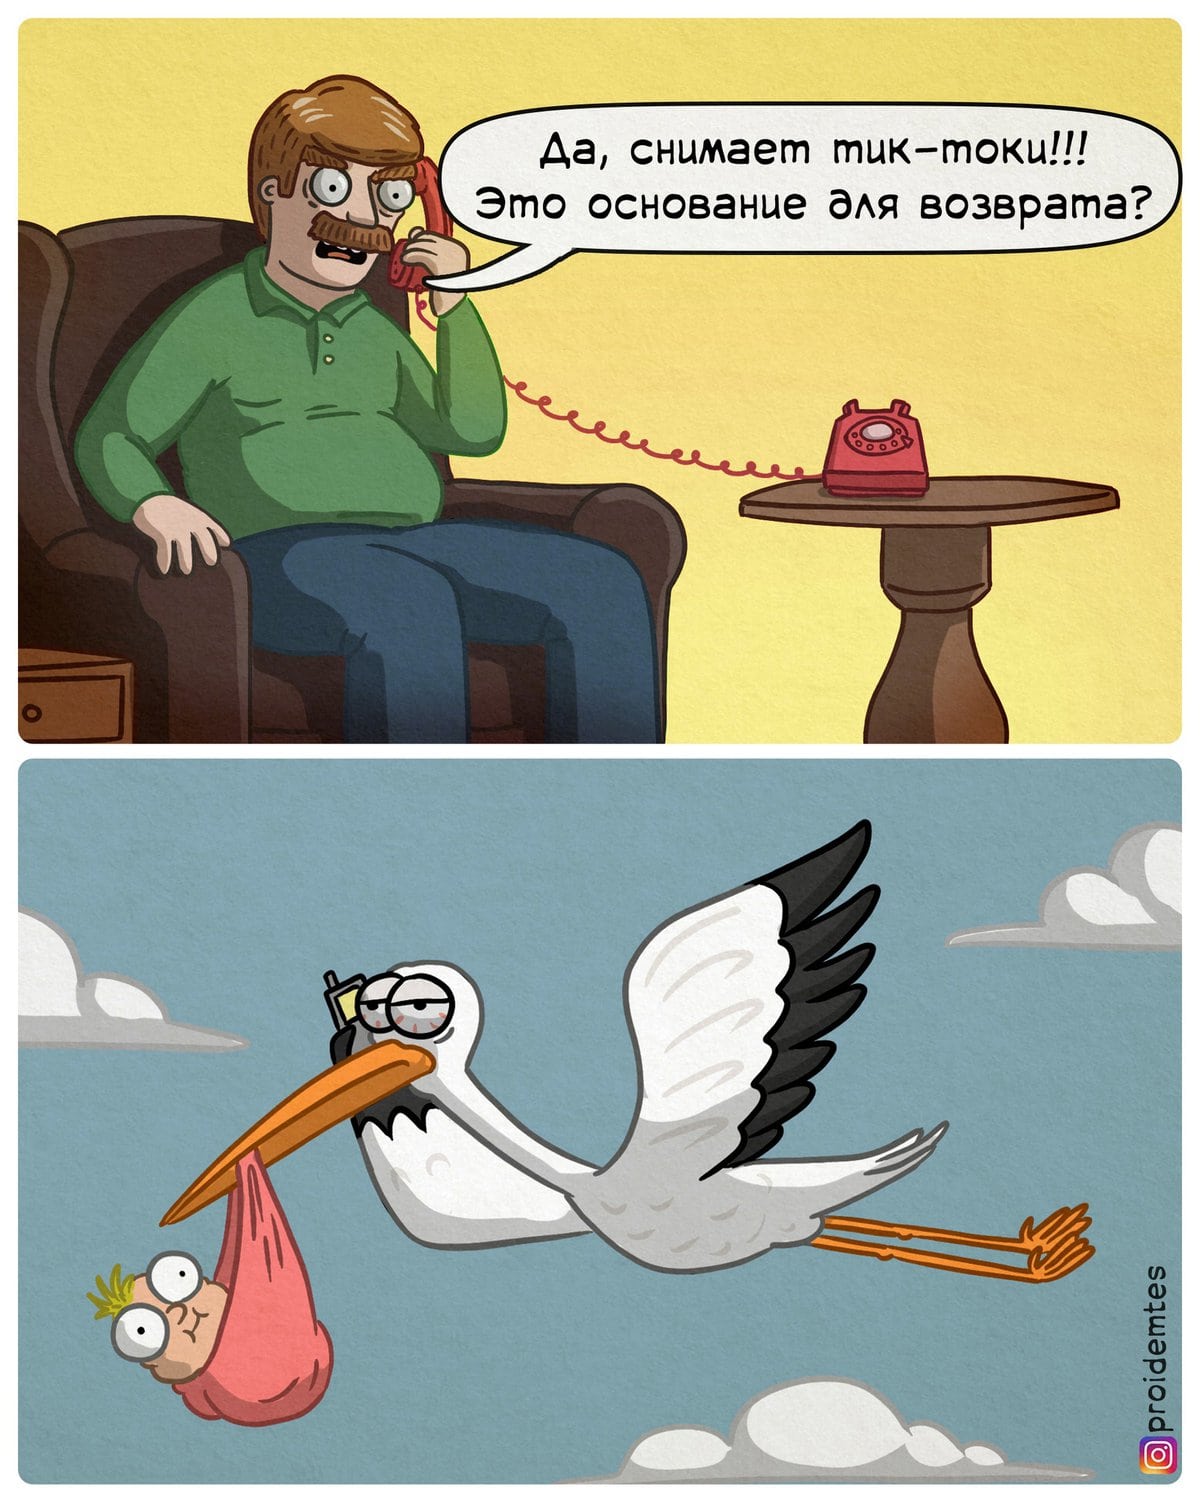 18 юморных комиксов от художника из Москвы, который любит обыгрывать бытовые ситуации с нетипичной стороны 55